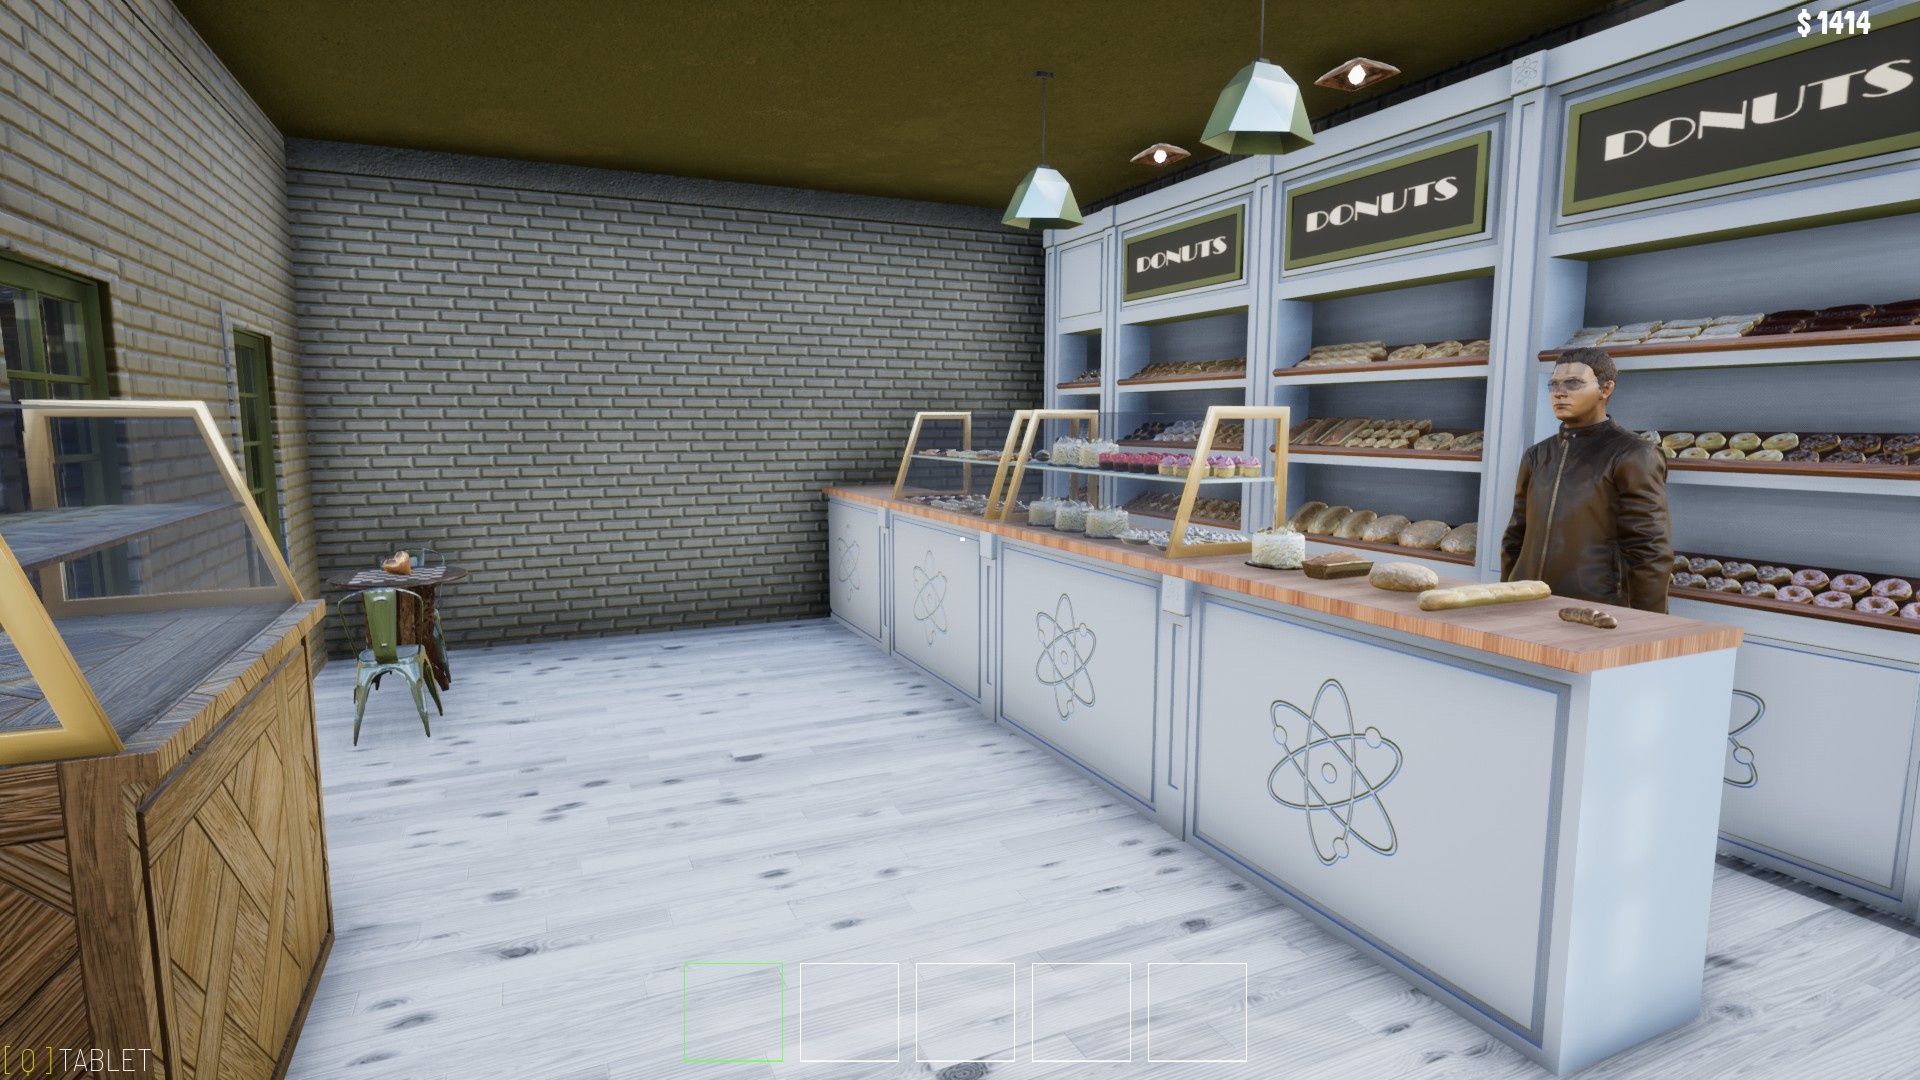 (Atomic Bakery мы покупаем несколько видов хлеба просто одно из зданий, страдающих от совершенно неподходящего дизайна)